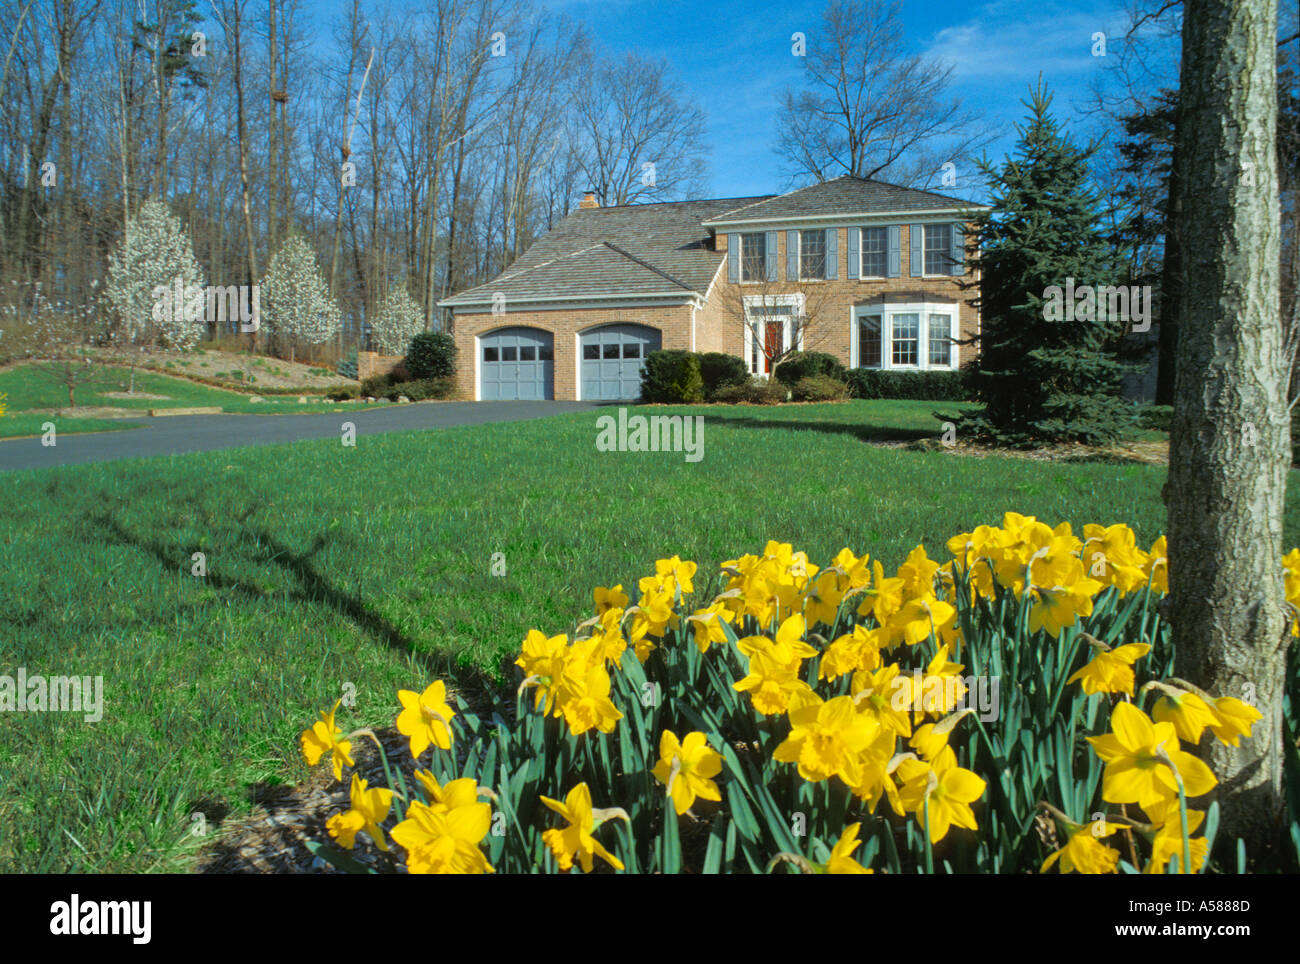 Narcisos amarillos en el primer plano de la parte frontal de la casa de ladrillo marrón con garaje para dos coches y una larga entrada liberada de propiedad Foto de stock